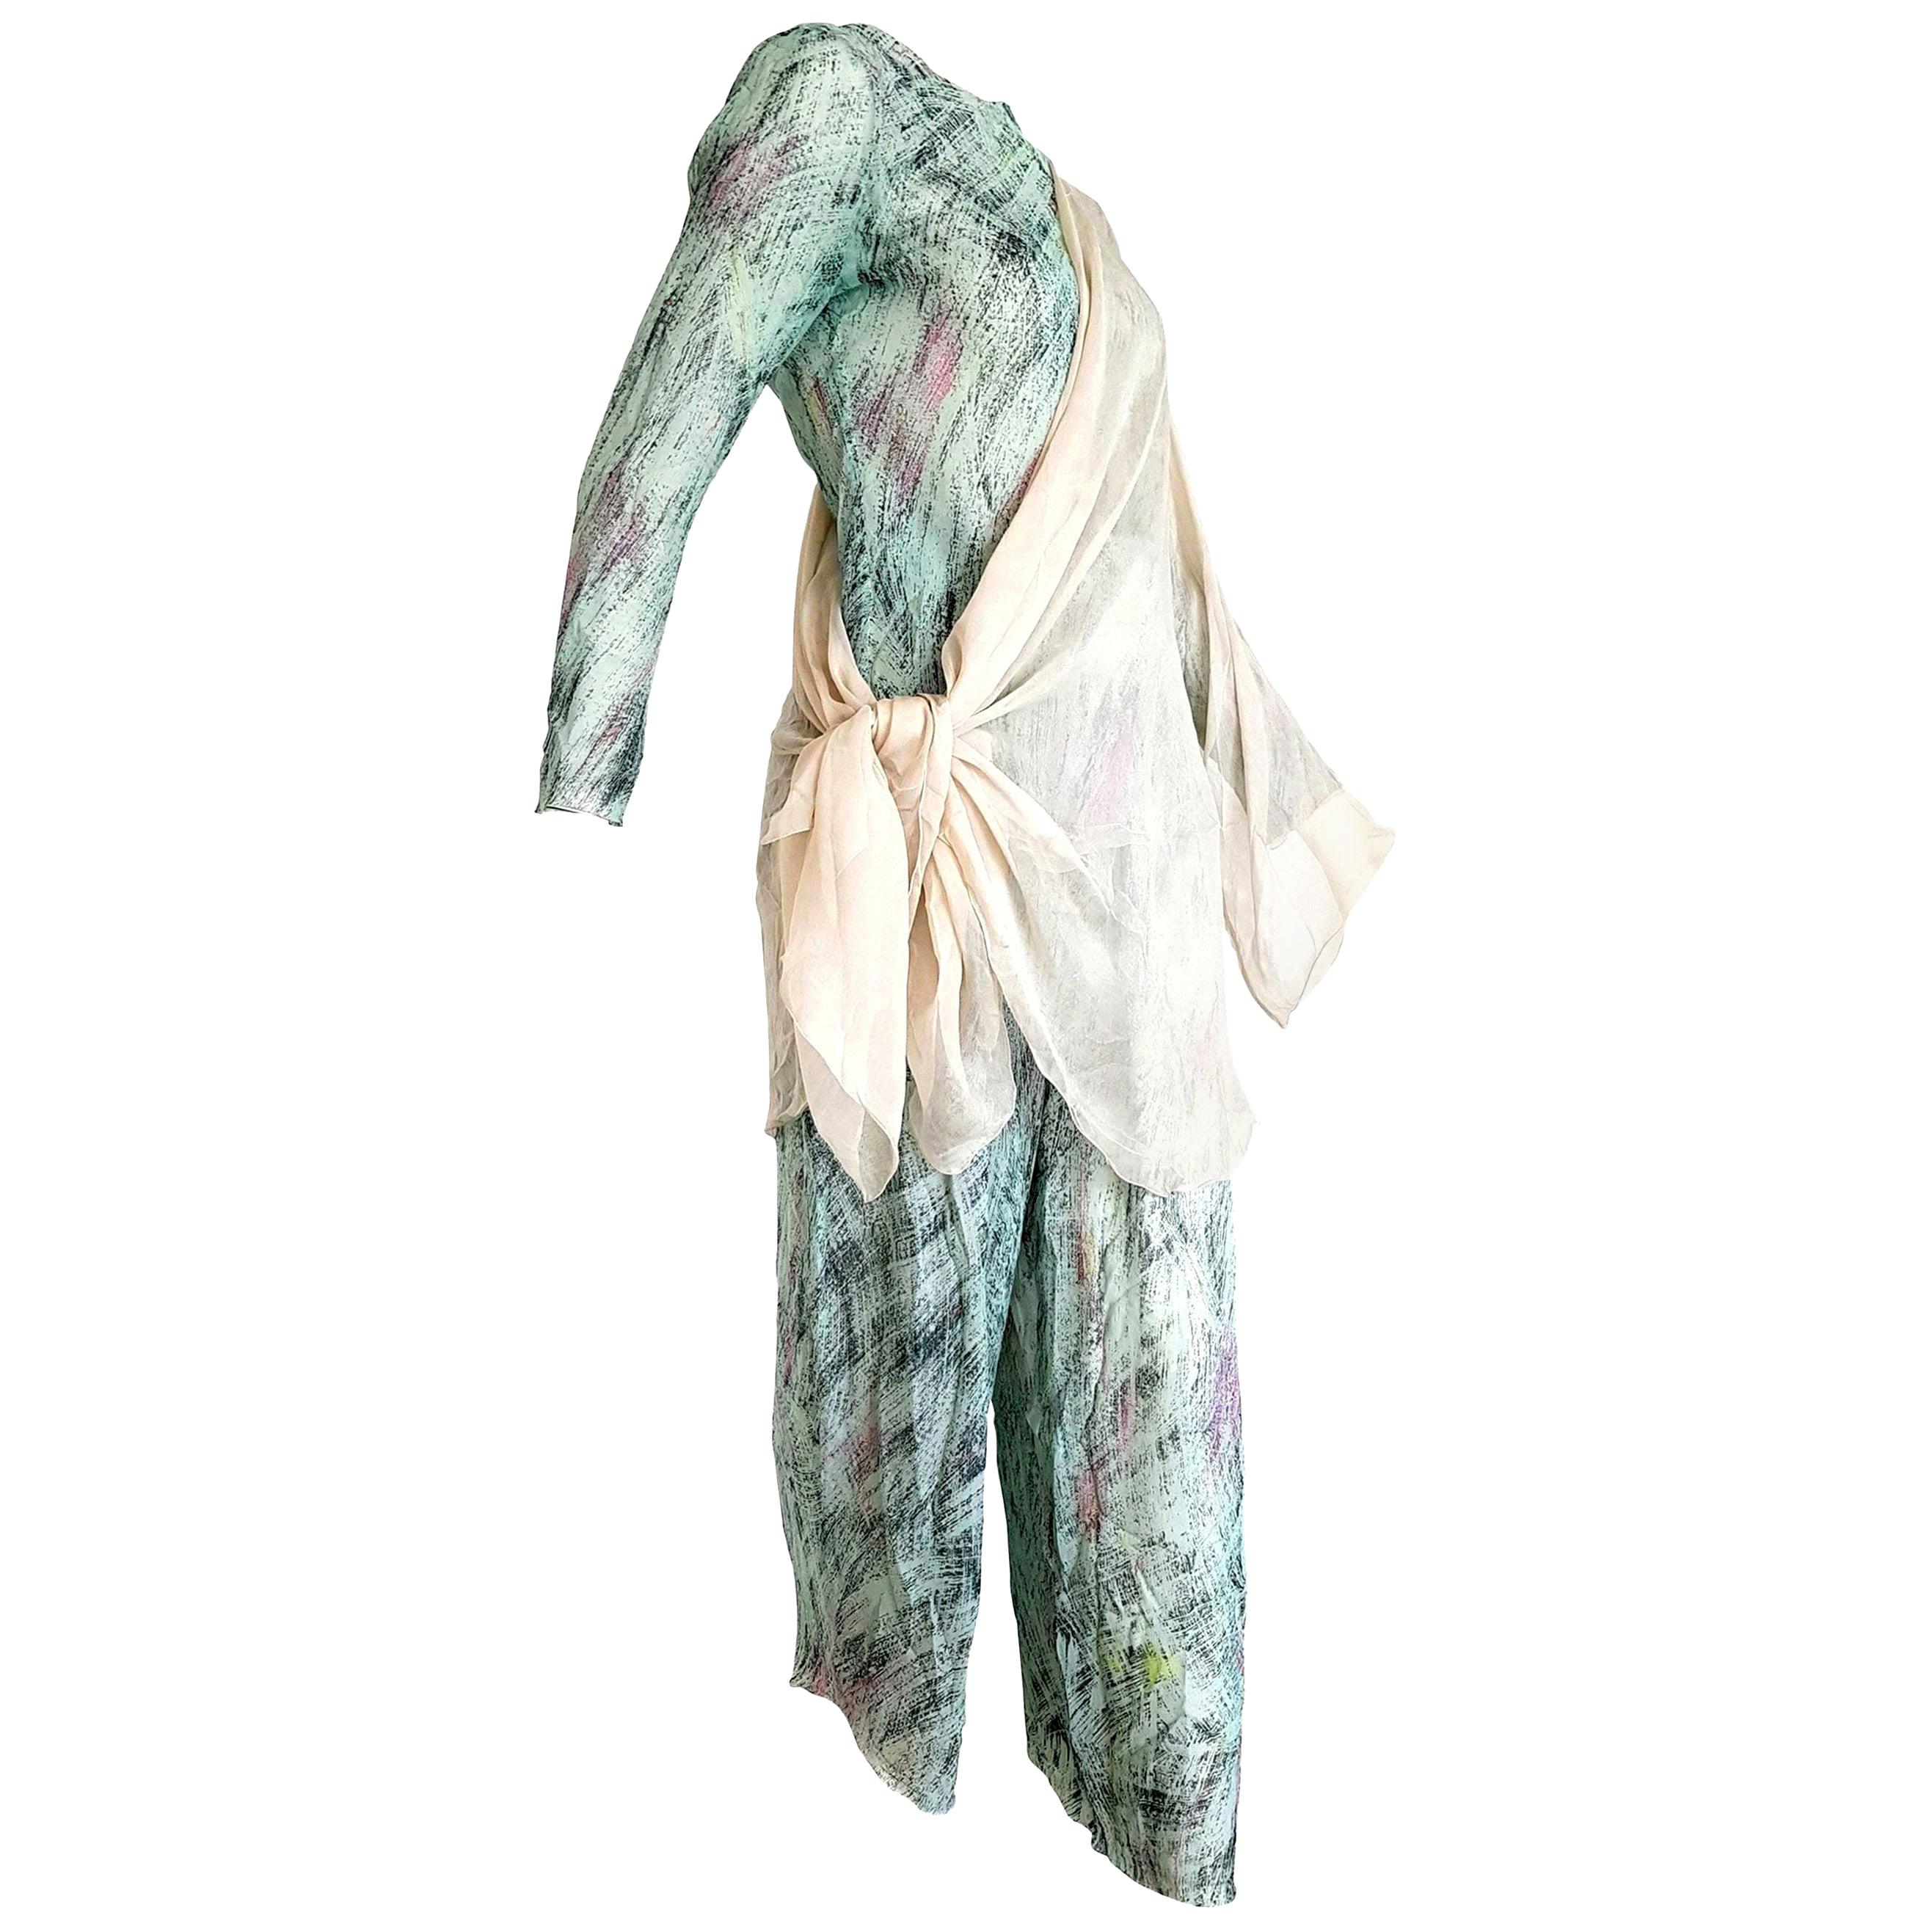 Giorgio ARMANI "New" Green Abstract Design Chiffon 3 pcs Silk Ensemble - Unworn For Sale